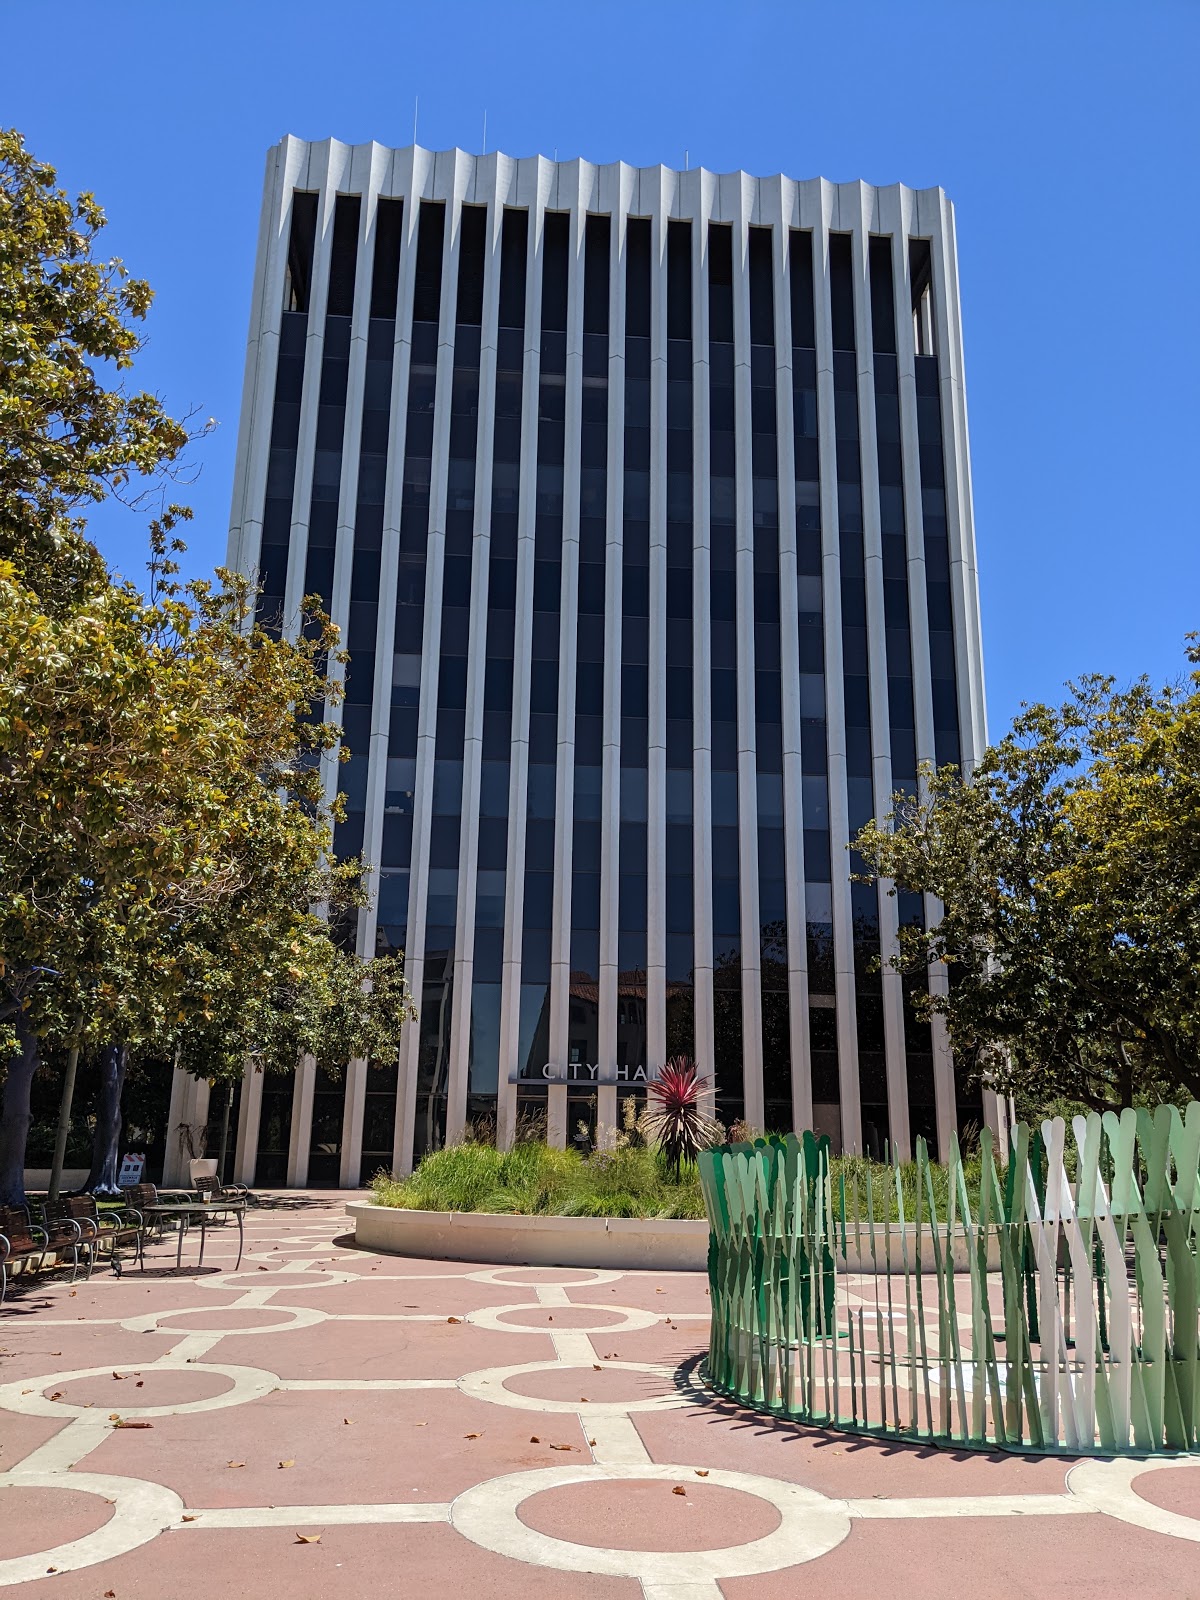 Photo of Curative SF Testing Van - Palo Alto City Hall - Wednesdays COVID Testing at 250 Hamilton Ave, Palo Alto, CA 94301, USA